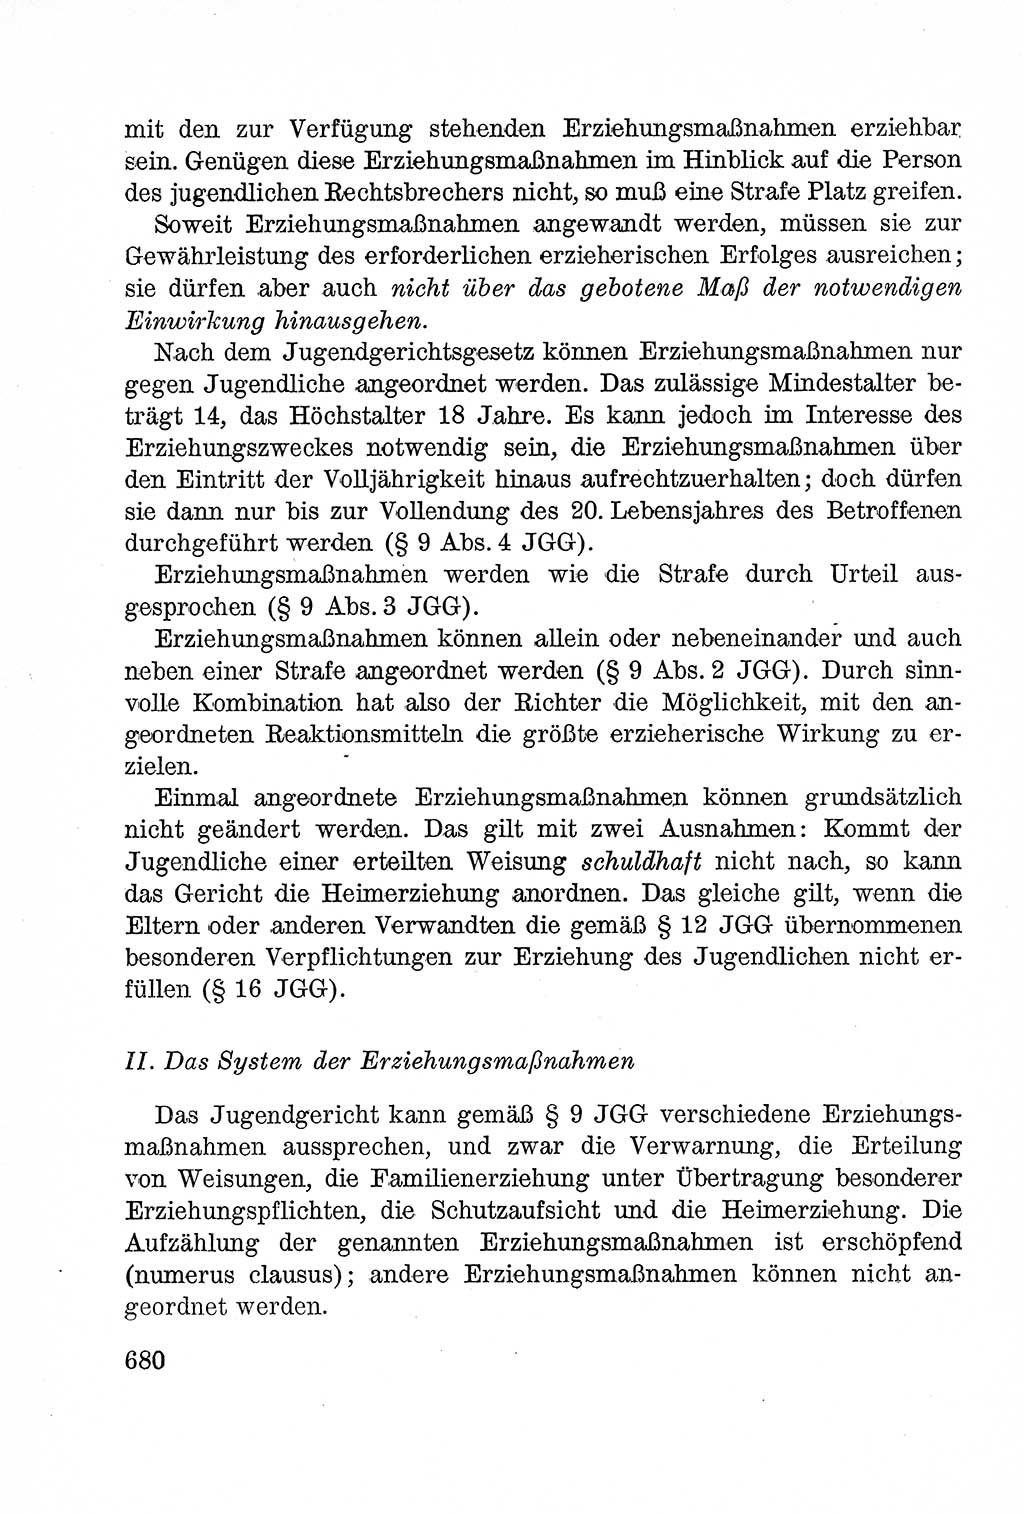 Lehrbuch des Strafrechts der Deutschen Demokratischen Republik (DDR), Allgemeiner Teil 1957, Seite 680 (Lb. Strafr. DDR AT 1957, S. 680)